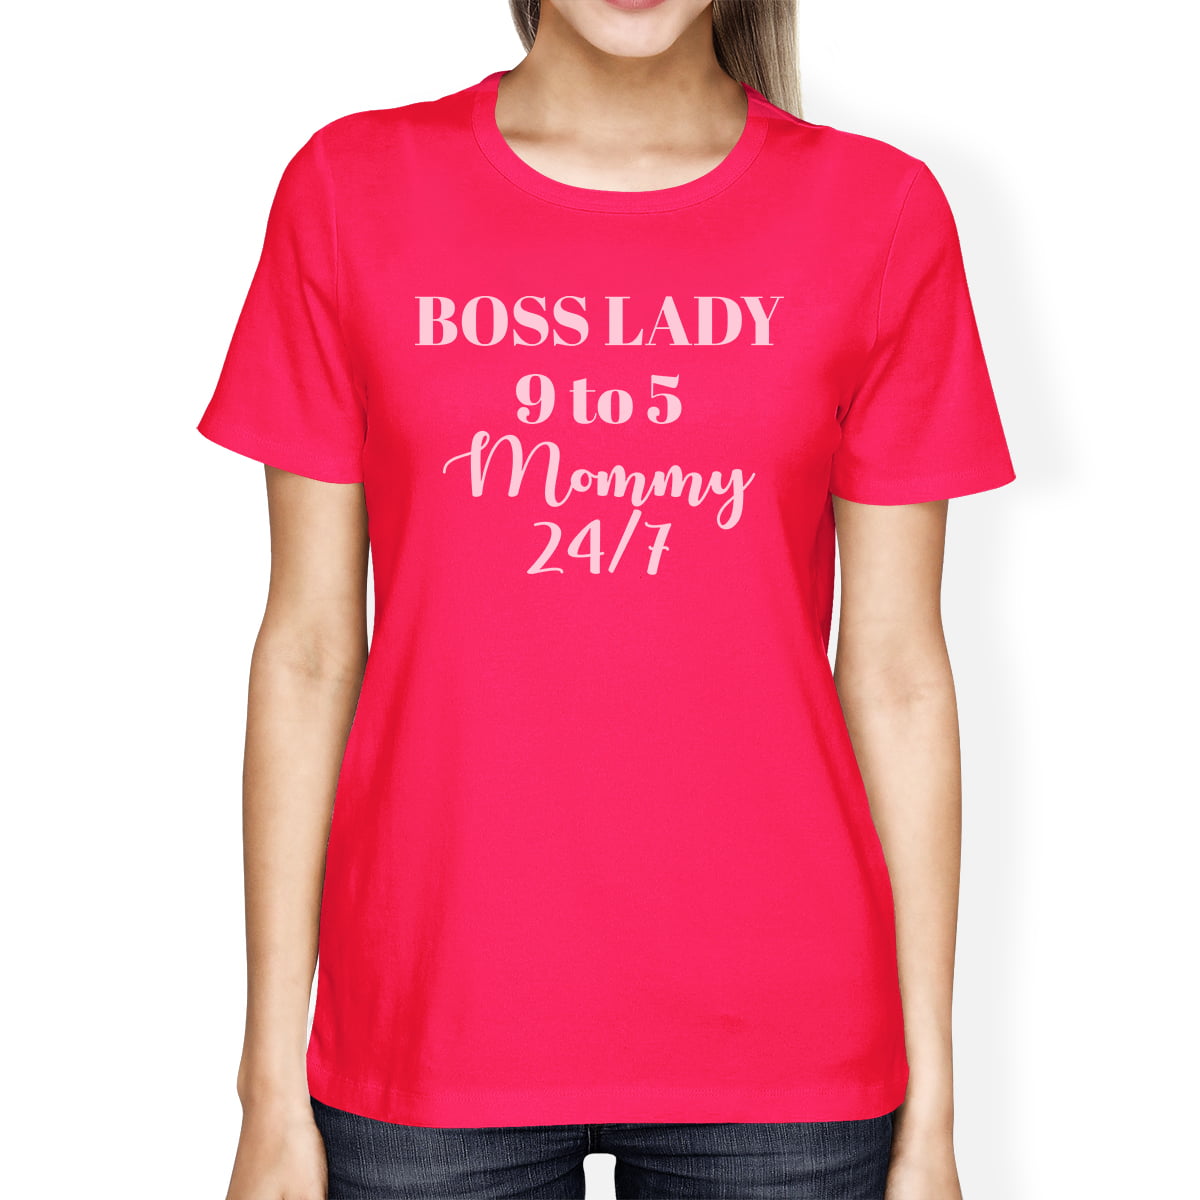 boss lady shirt express